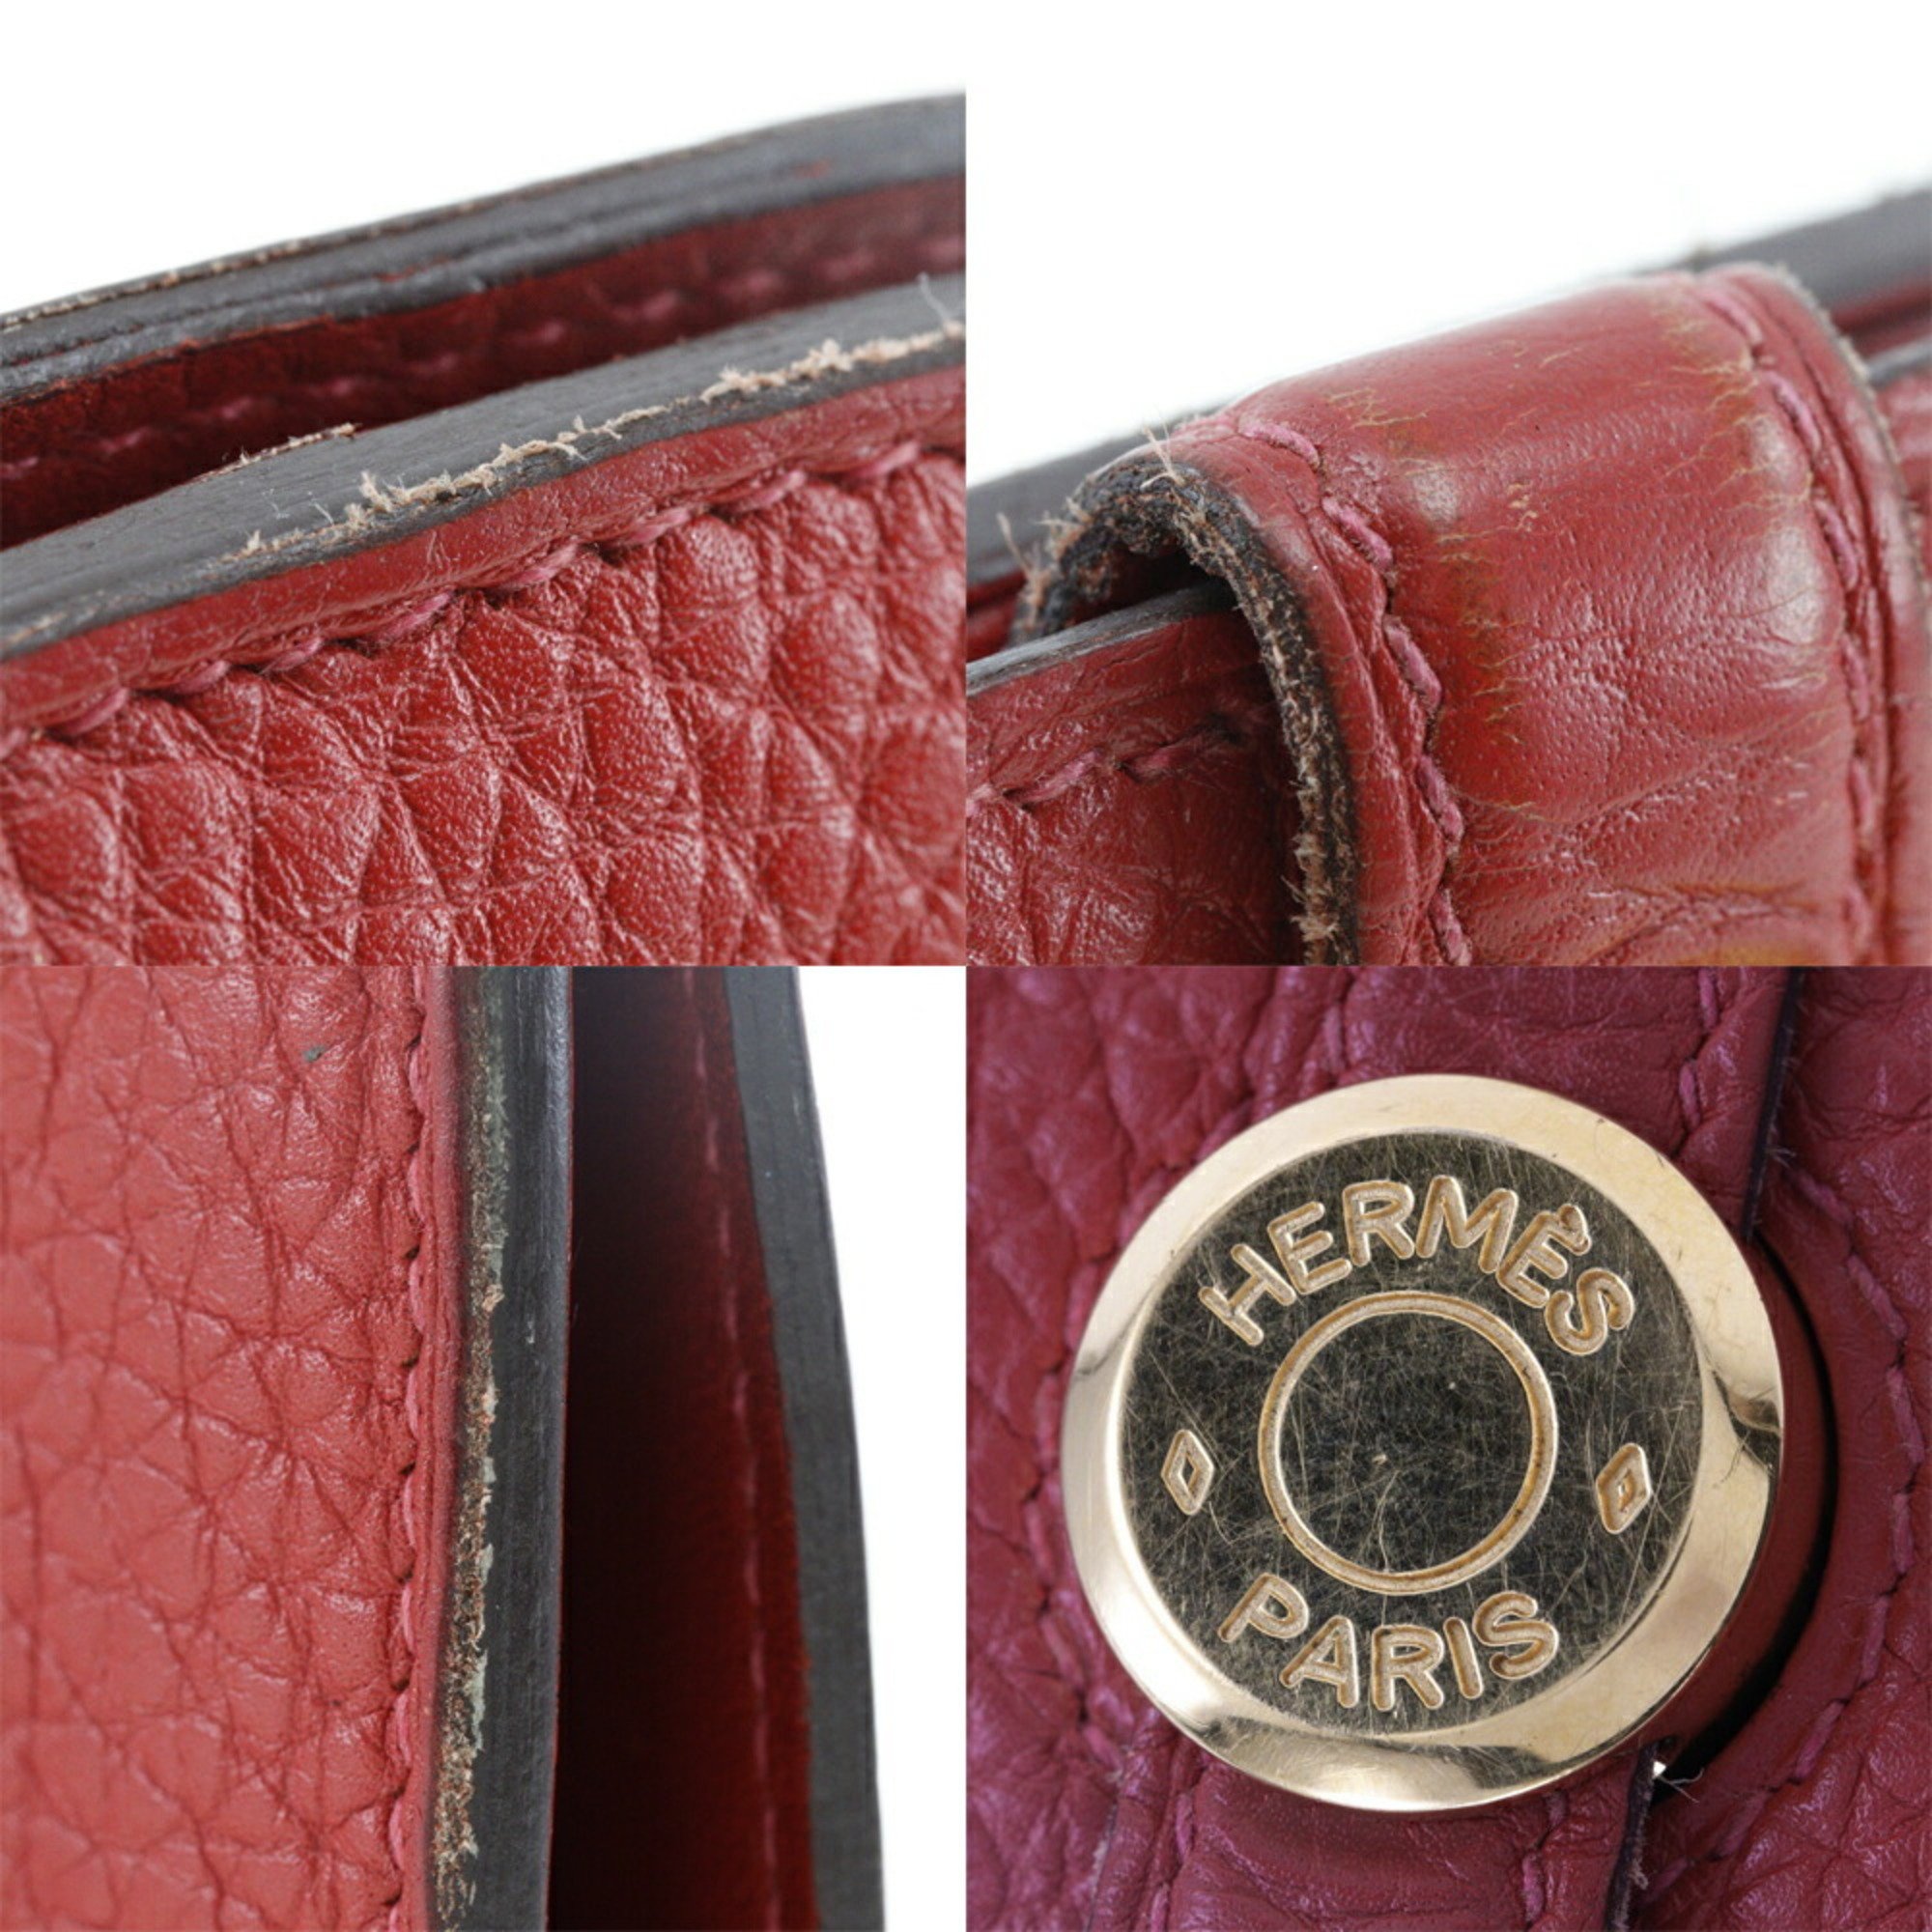 HERMES Dogon Long Wallet Togo Made in France 2012 Red/Gold Hardware □P Belt Ladies